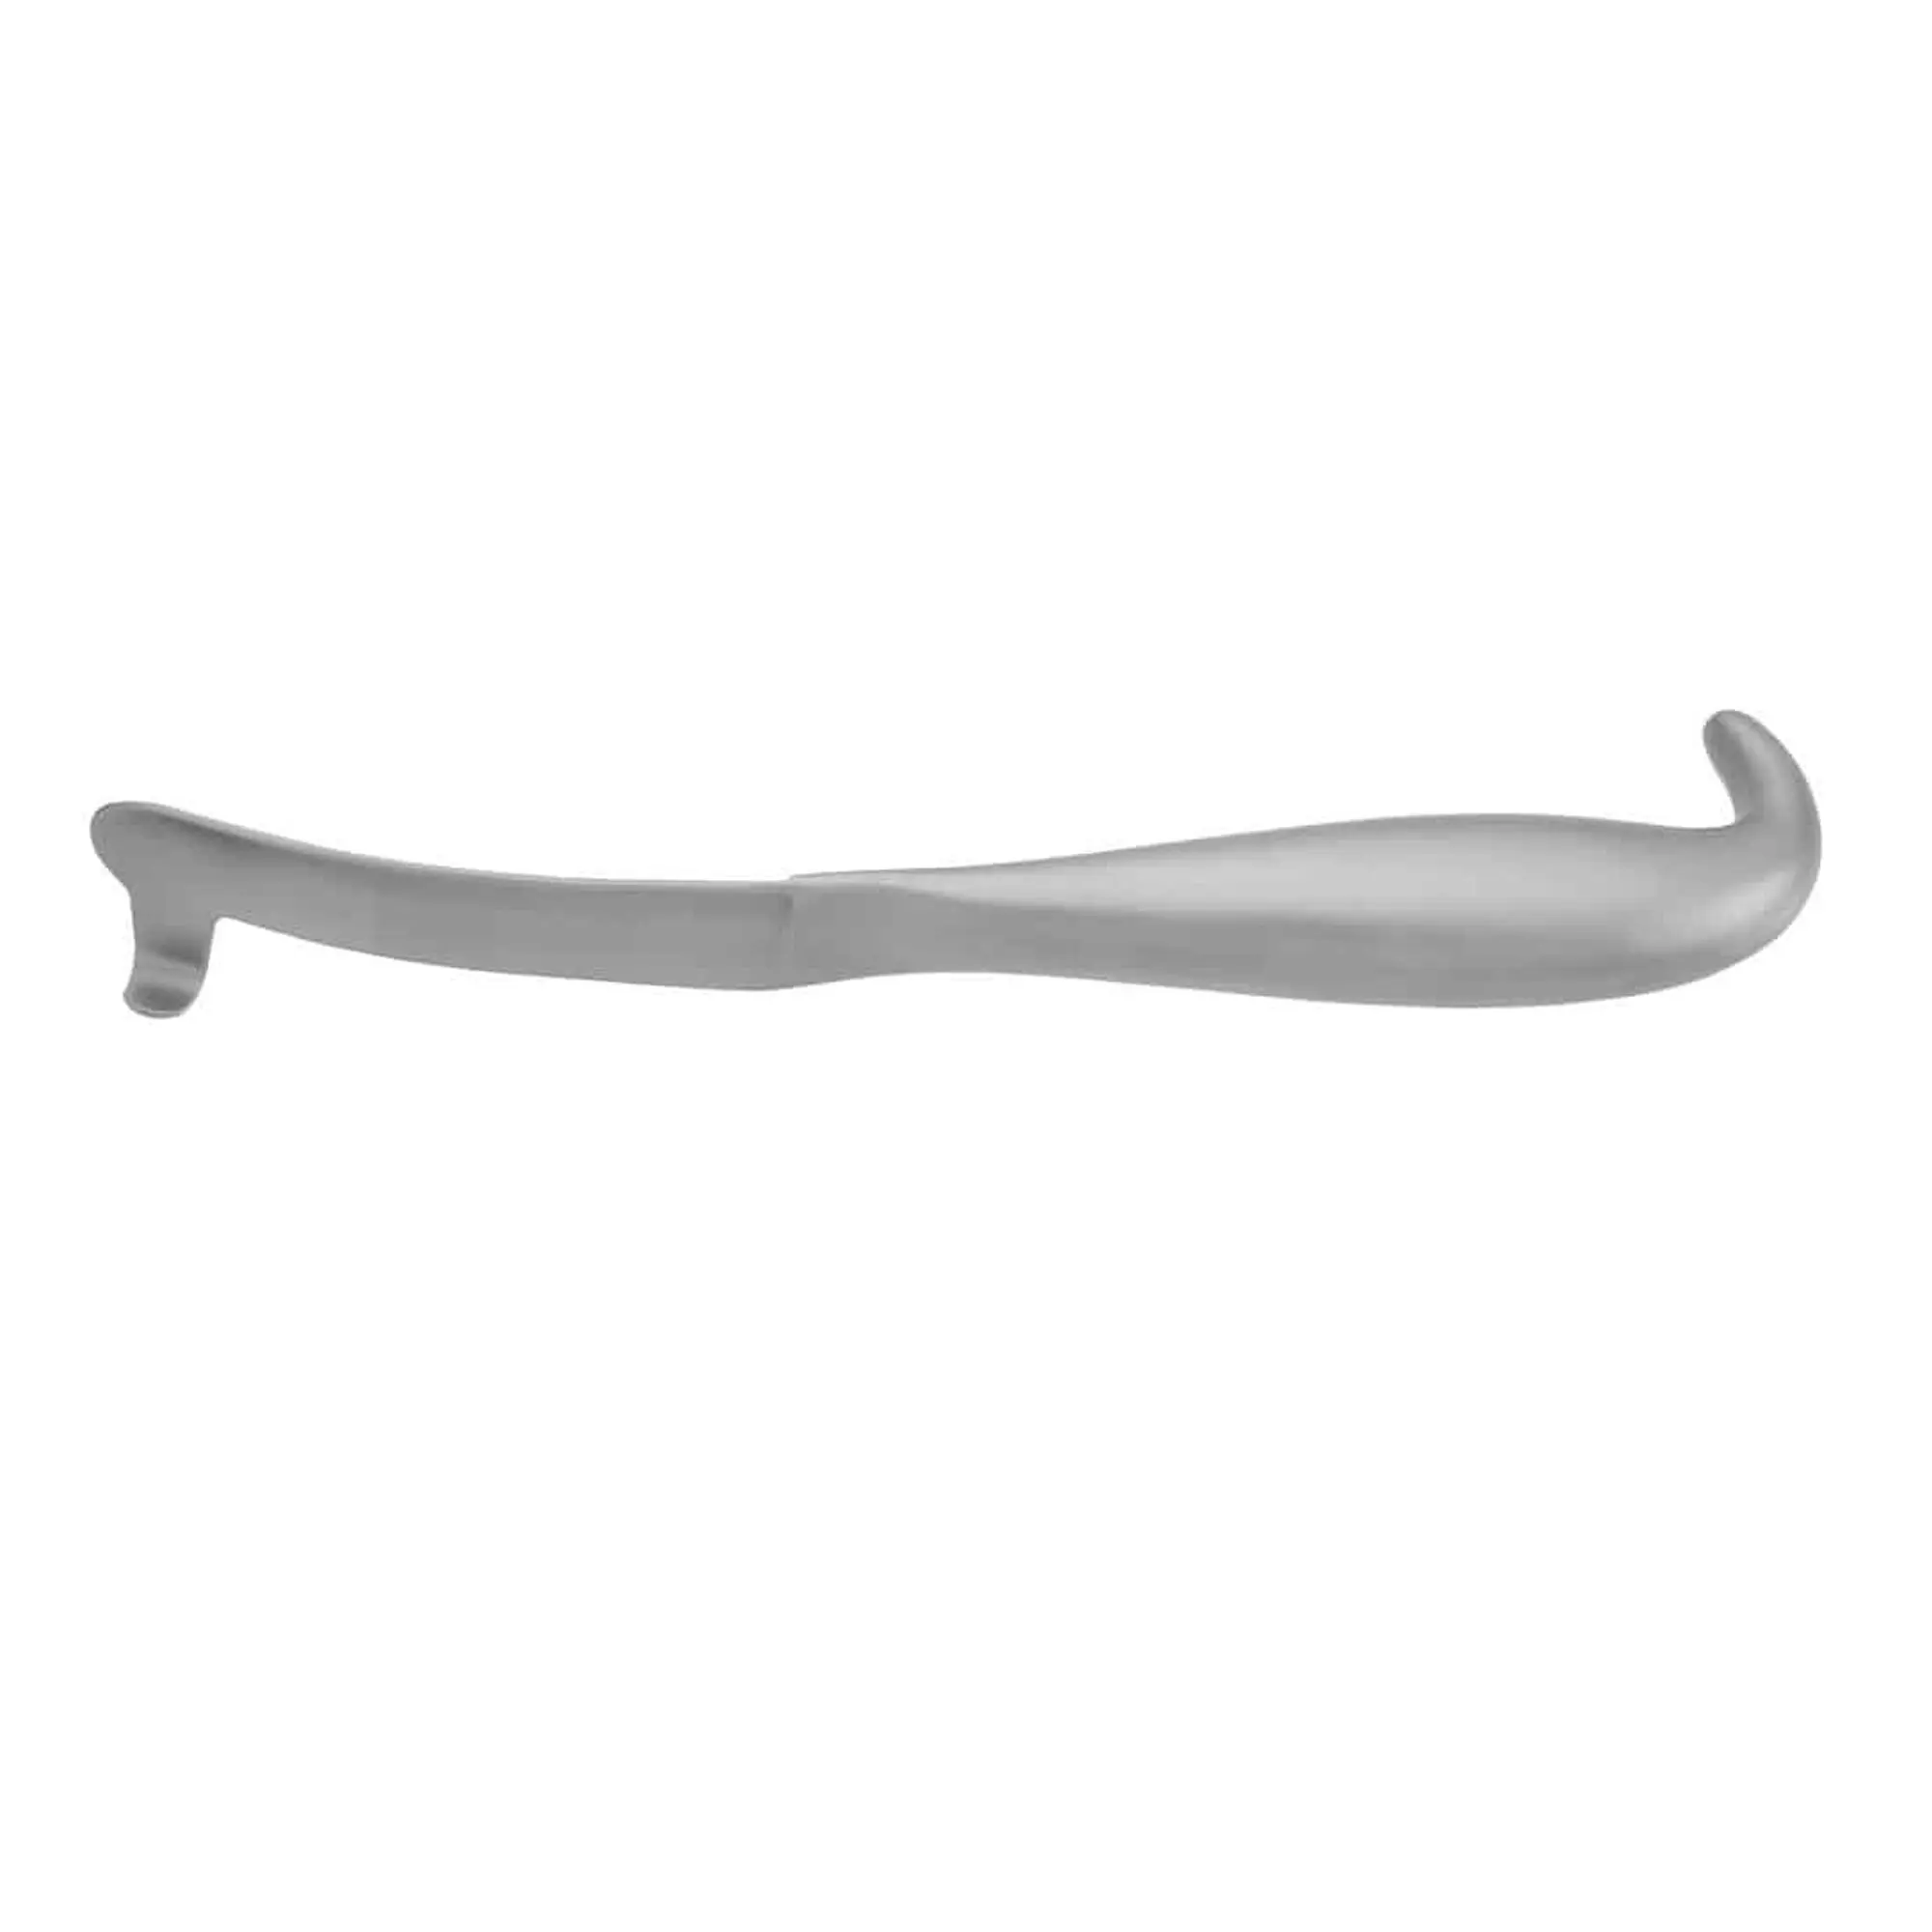 والفكين أدوات جراحة مسالك بولية باور نوع داخل الفم ضام اليسار هوك 21 سنتيمتر أدوات جراحية بلاستيكية أدوات جراحة مسالك بولية s